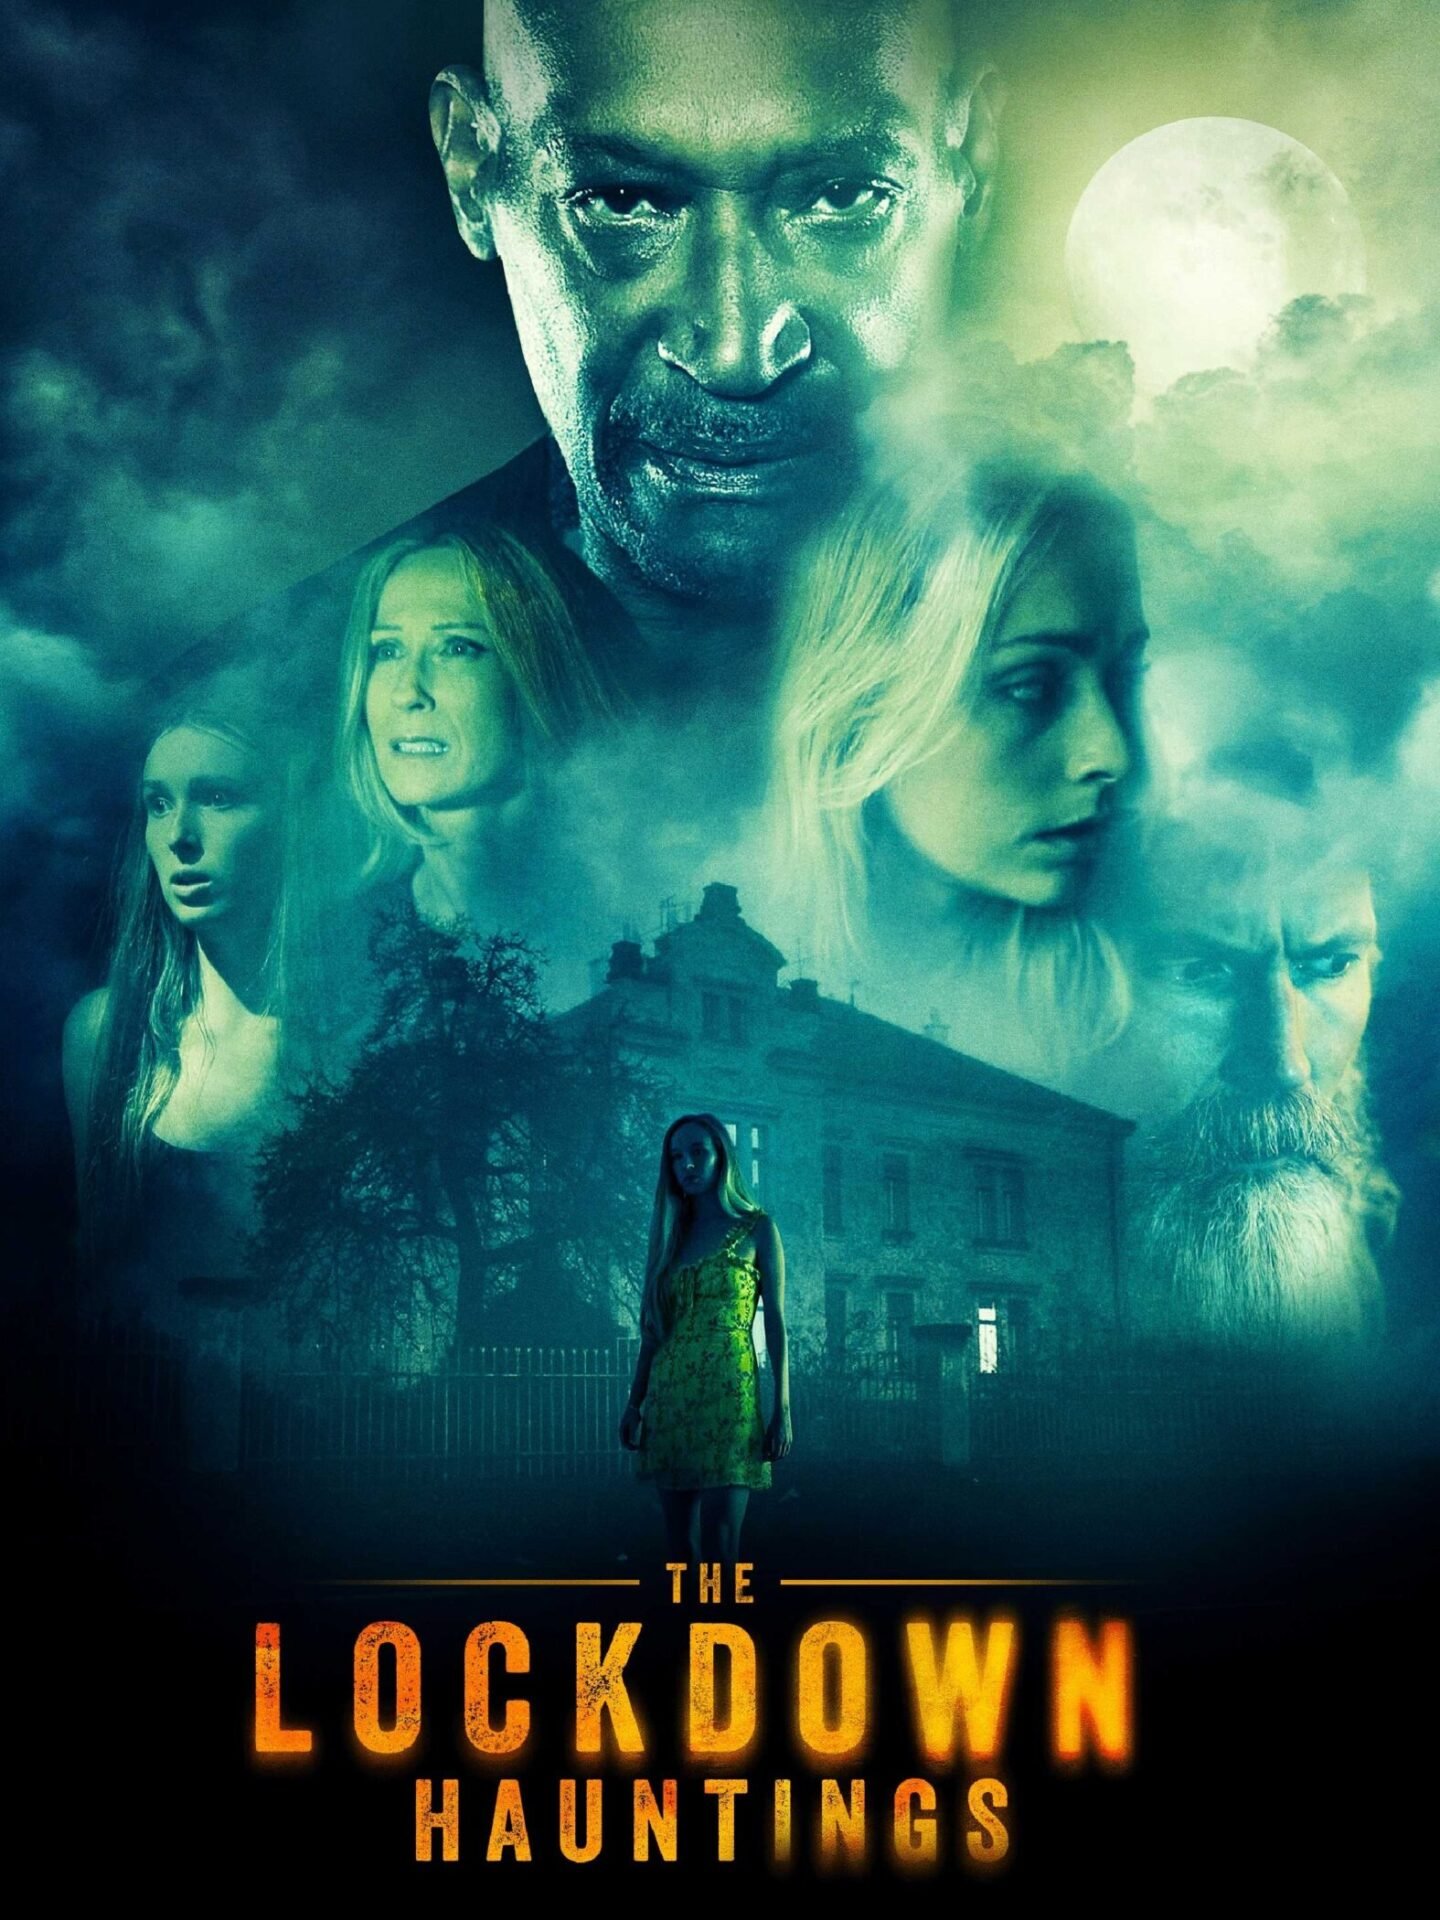 THE LOCKDOWN HAUNTINGS Trailer do filme de terror com Tony Todd sobre a volta de um serial killer durante a pandemia